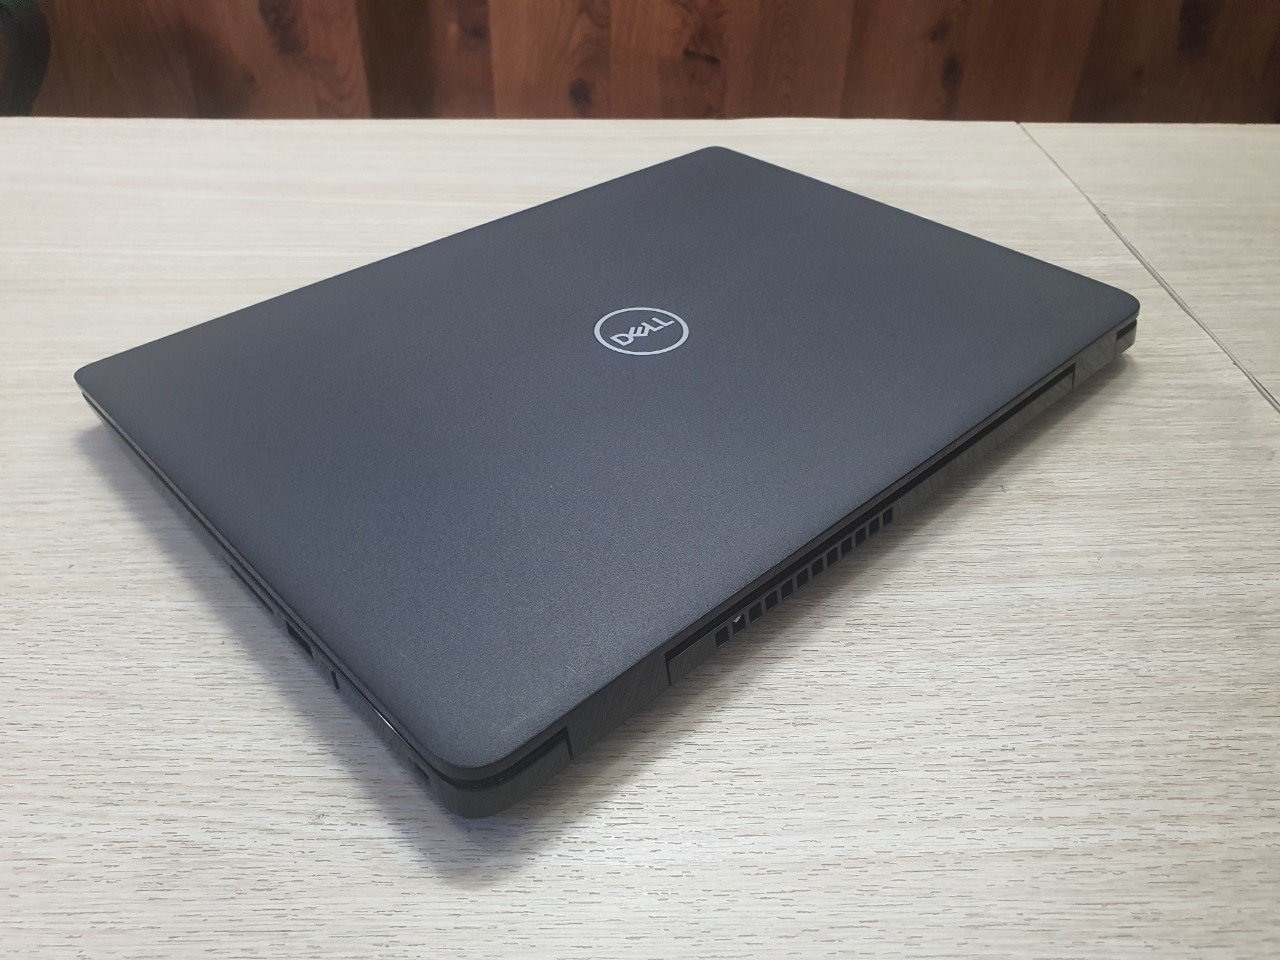 Khuyến mãi lớn: Mua Laptop Dell tại Thủ Dầu Một - Giảm ngay 200k khi check-in! - Ảnh 4